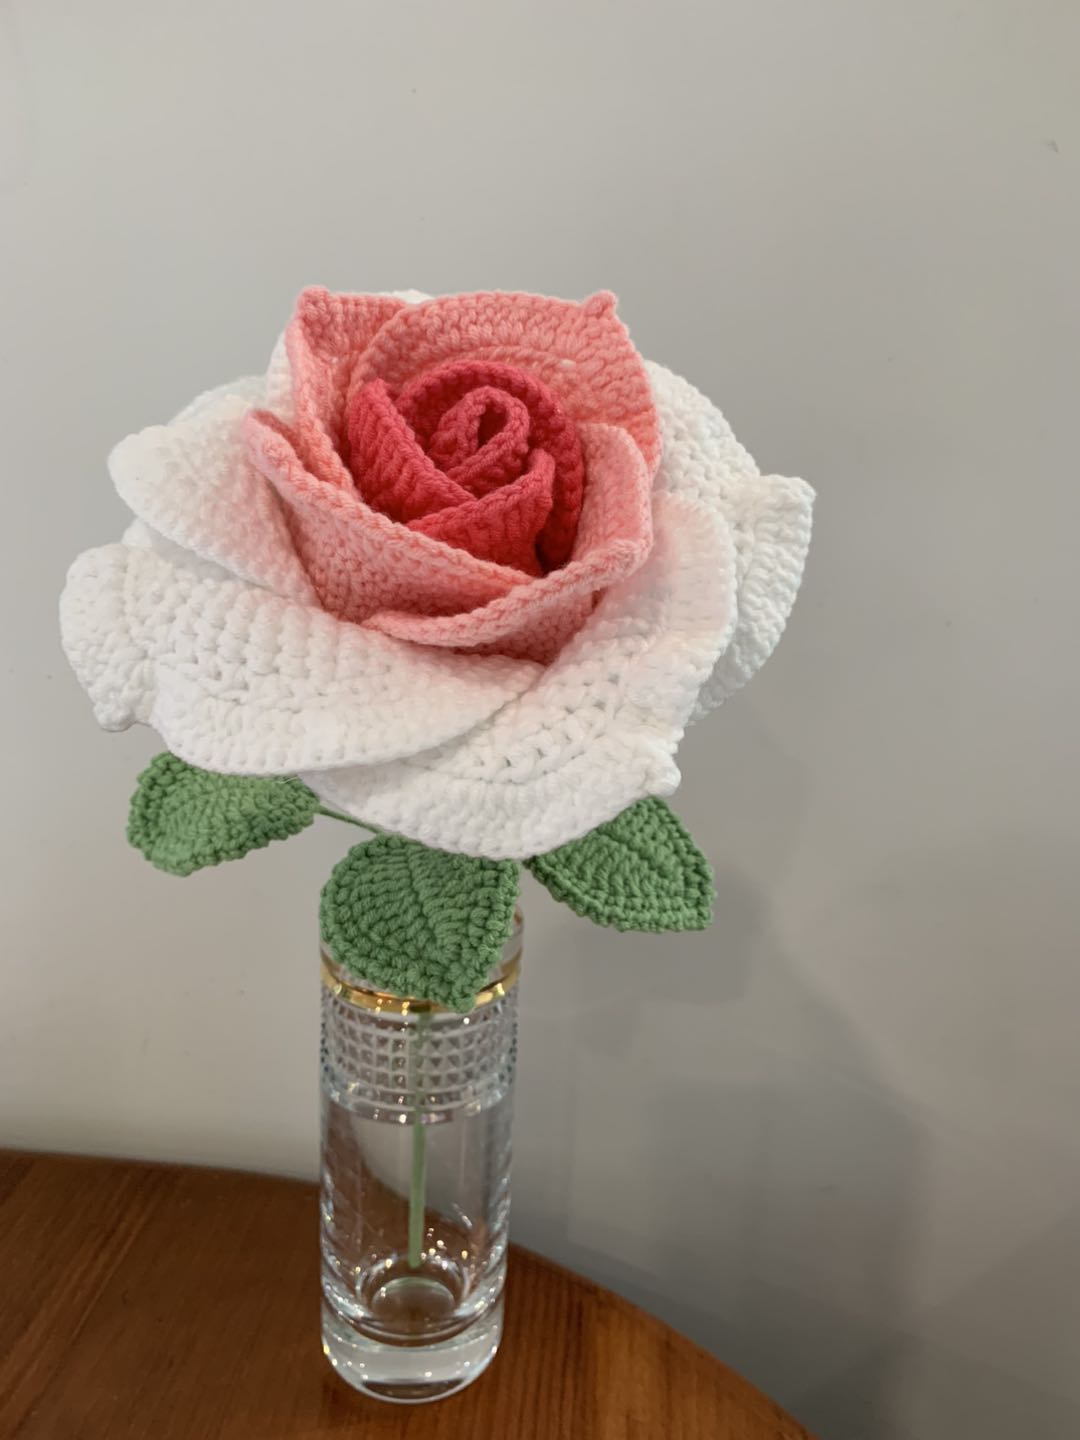 #Crochet rose